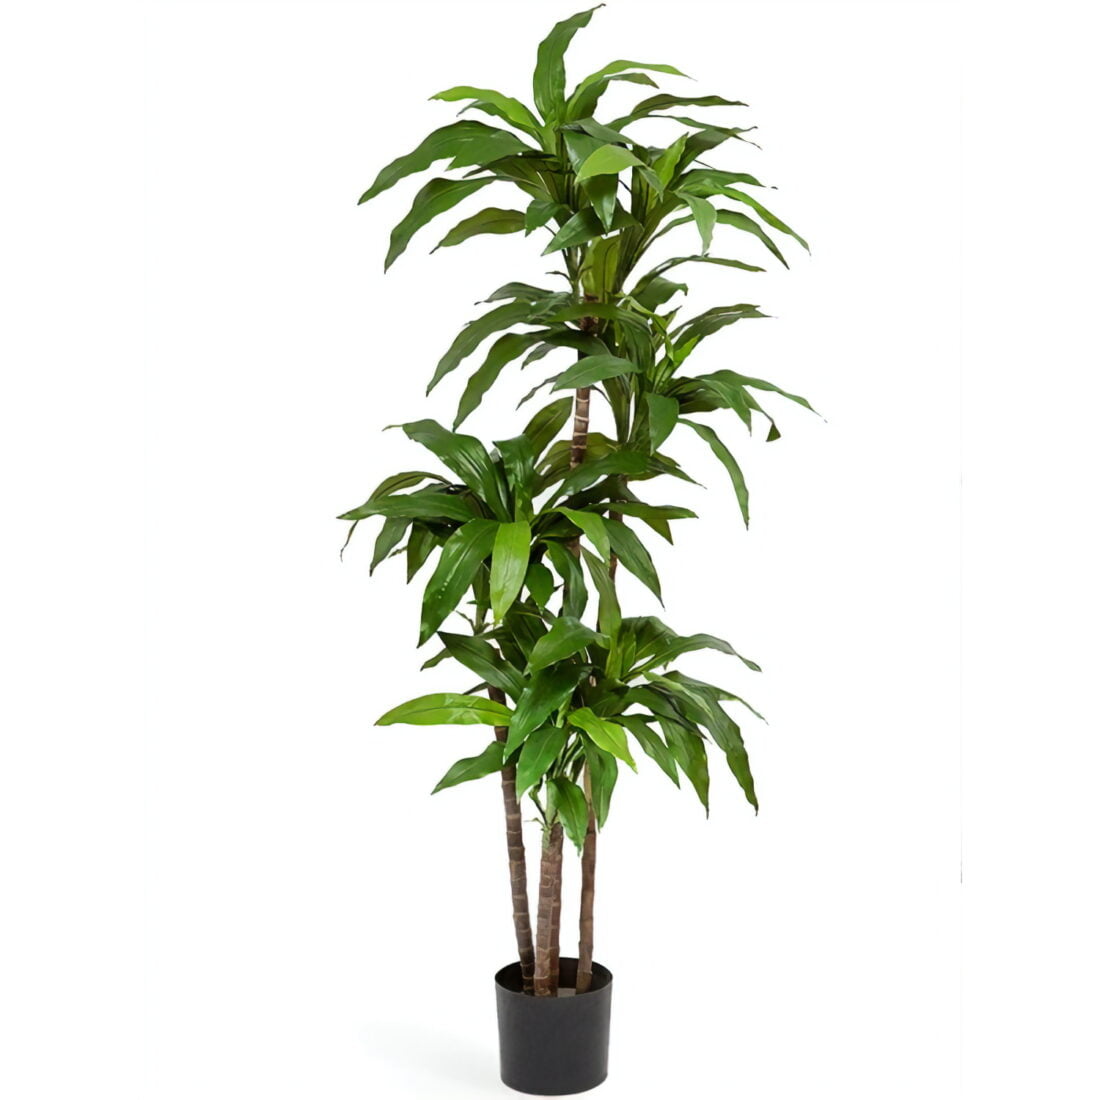 Искусственное растение Драцена Джанет Крейг зеленая, высота 150 см